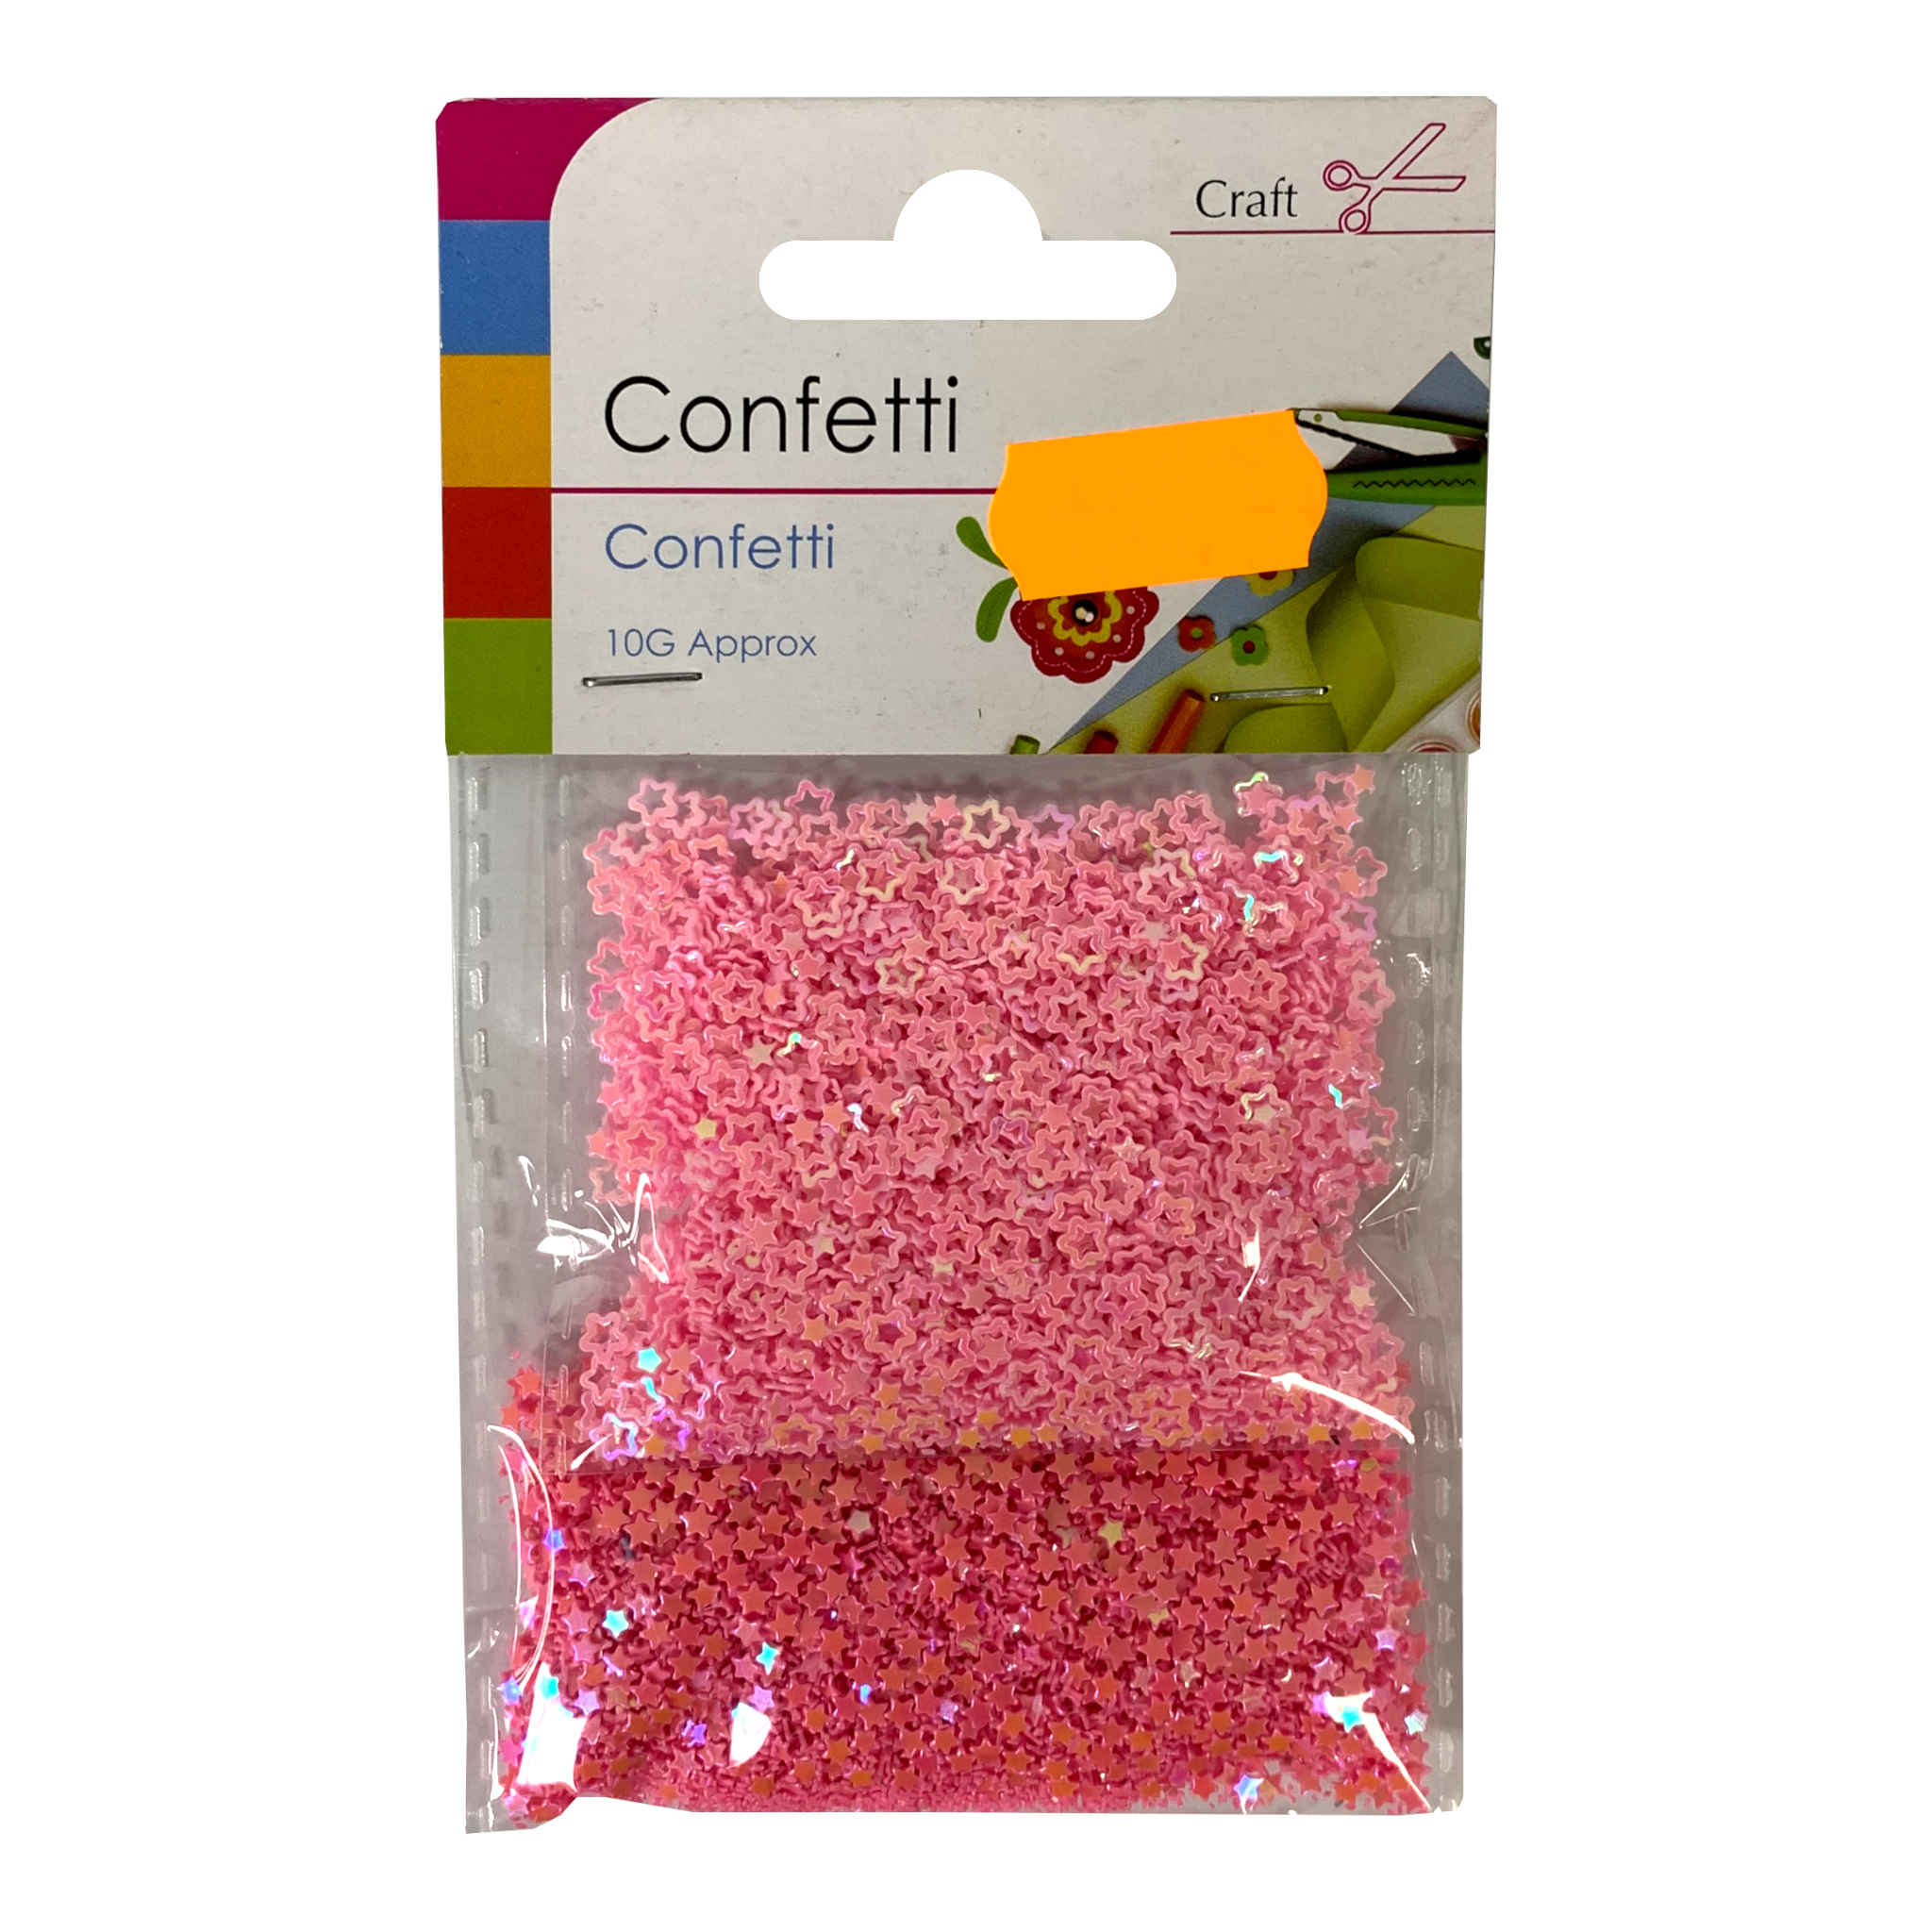 Confetti Pack | 10g | 8 x 11cm